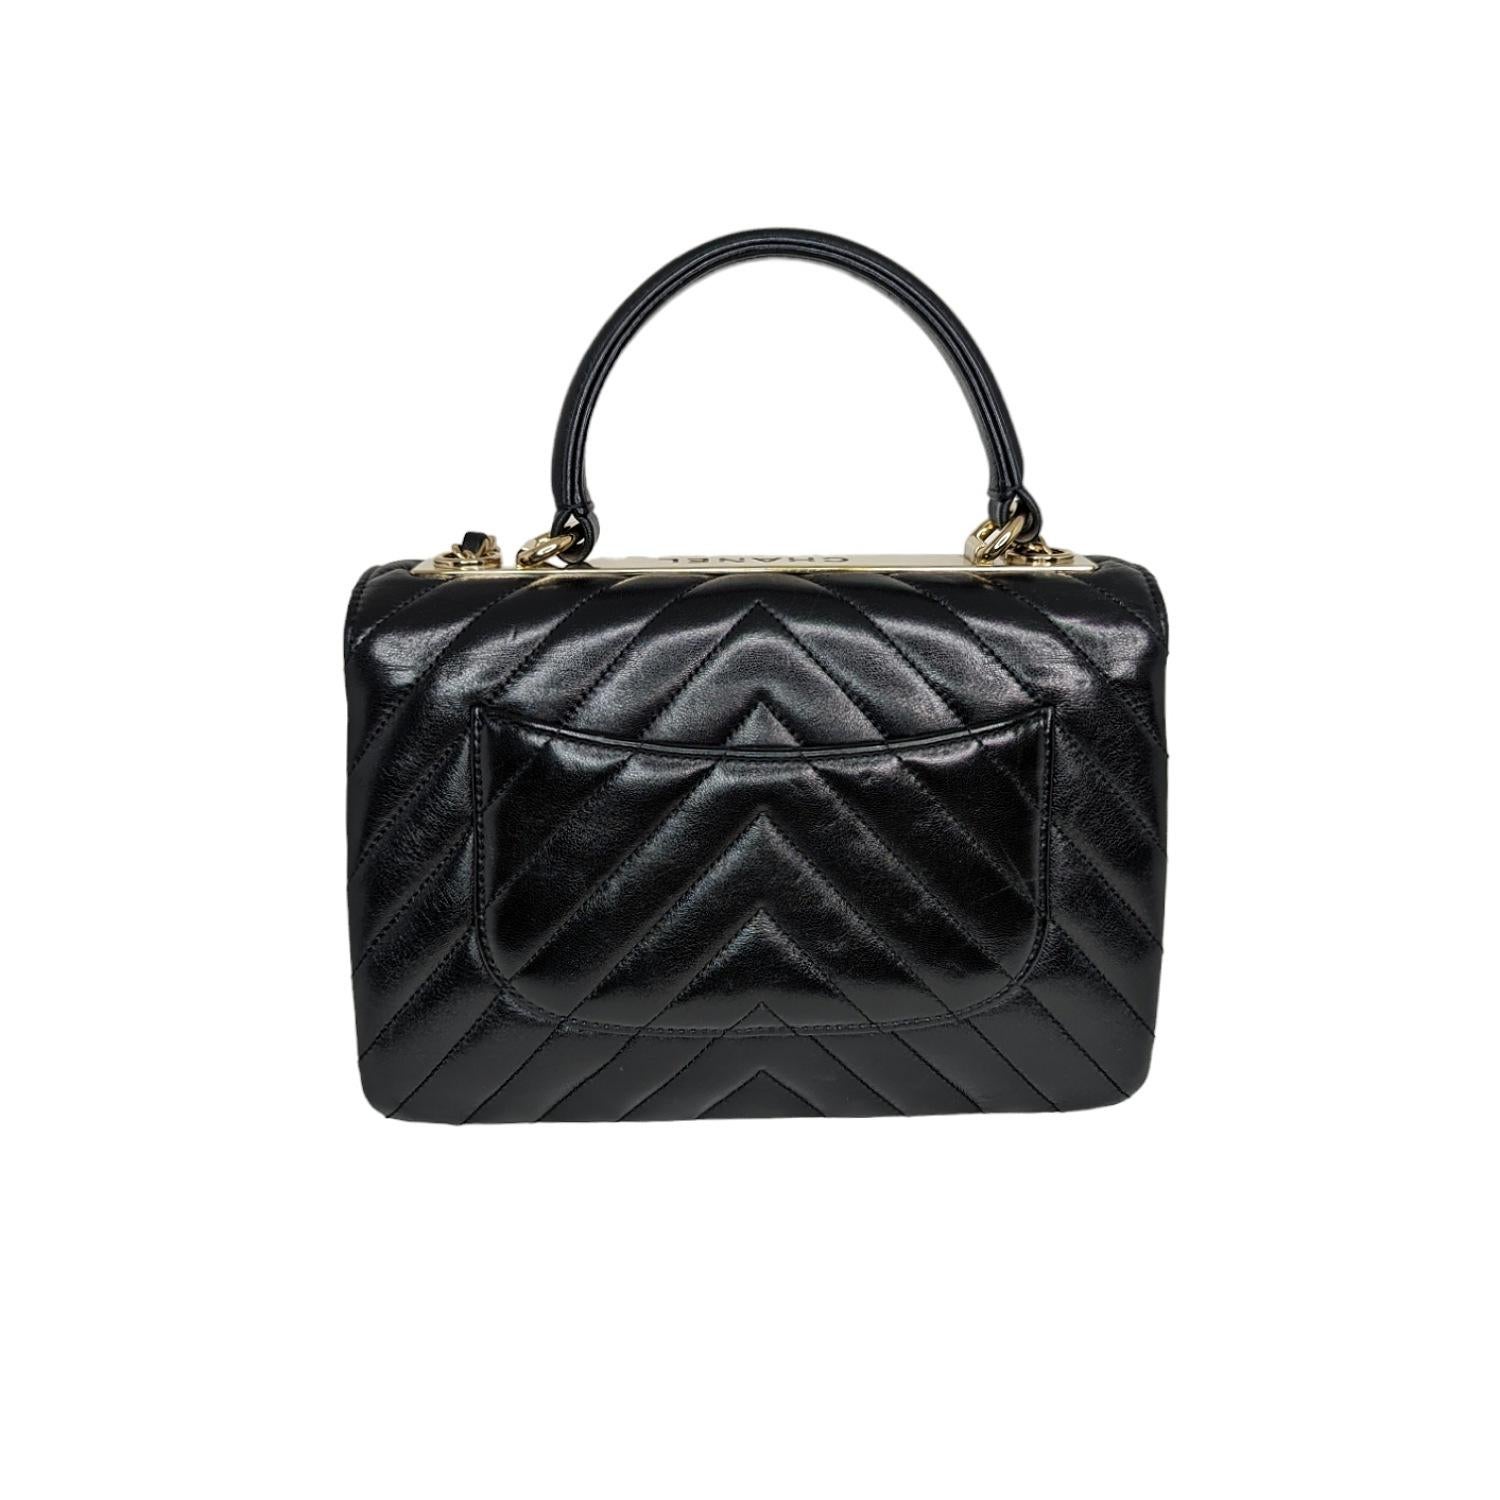 Diese stilvolle Handtasche ist aus schwarzem Lammleder mit Chevron-Steppung gefertigt. Der ikonische CC-Drehverschluss mit goldfarbener Hardware auf der Vorderseite. Auf der Rückseite der Tasche befindet sich ein praktisches Steckfach, und der